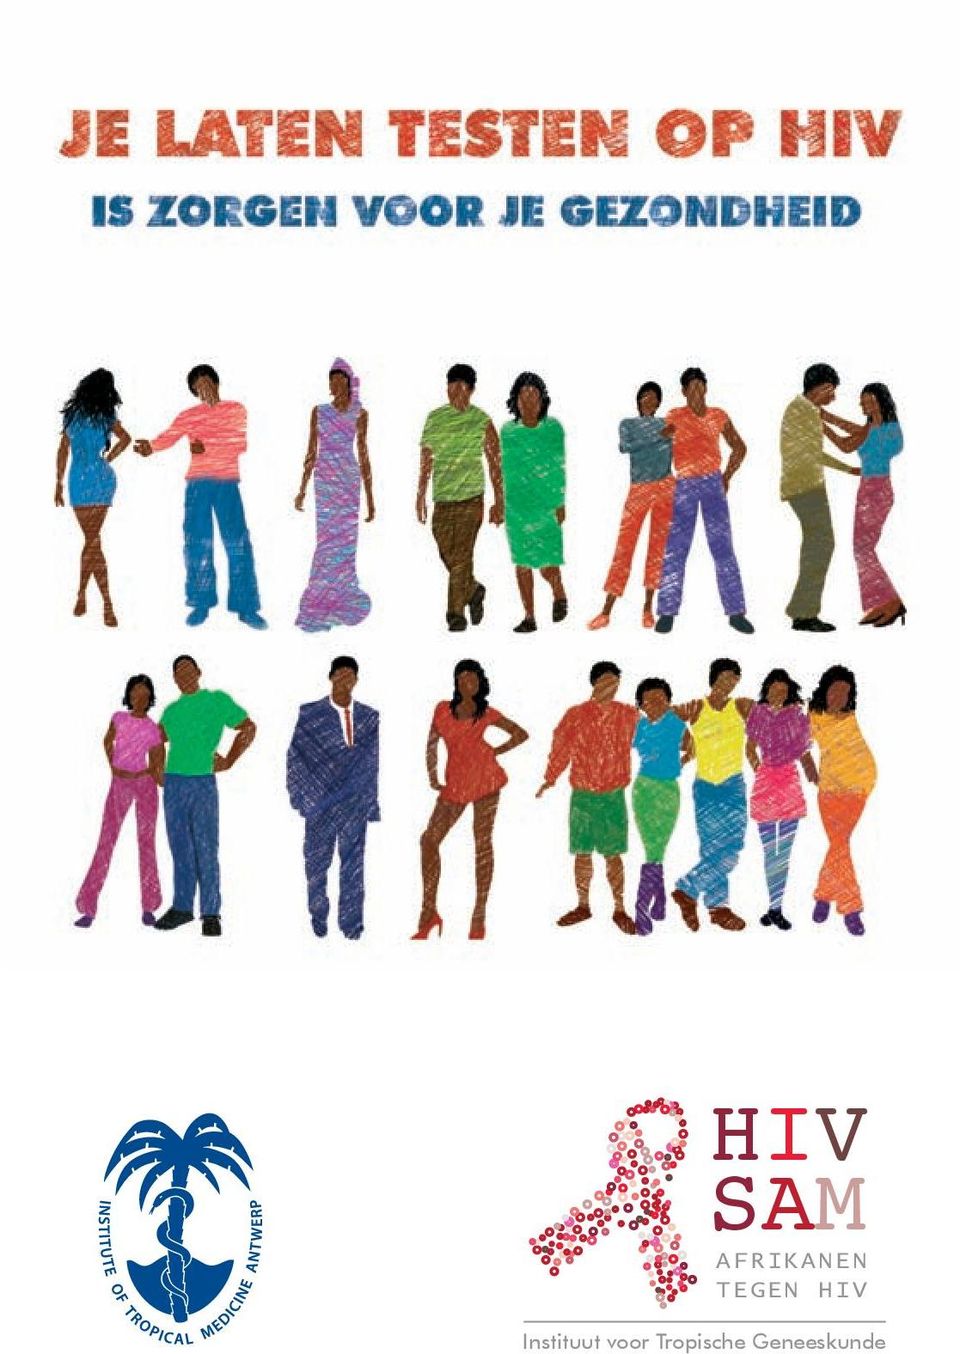 HIV Instituut